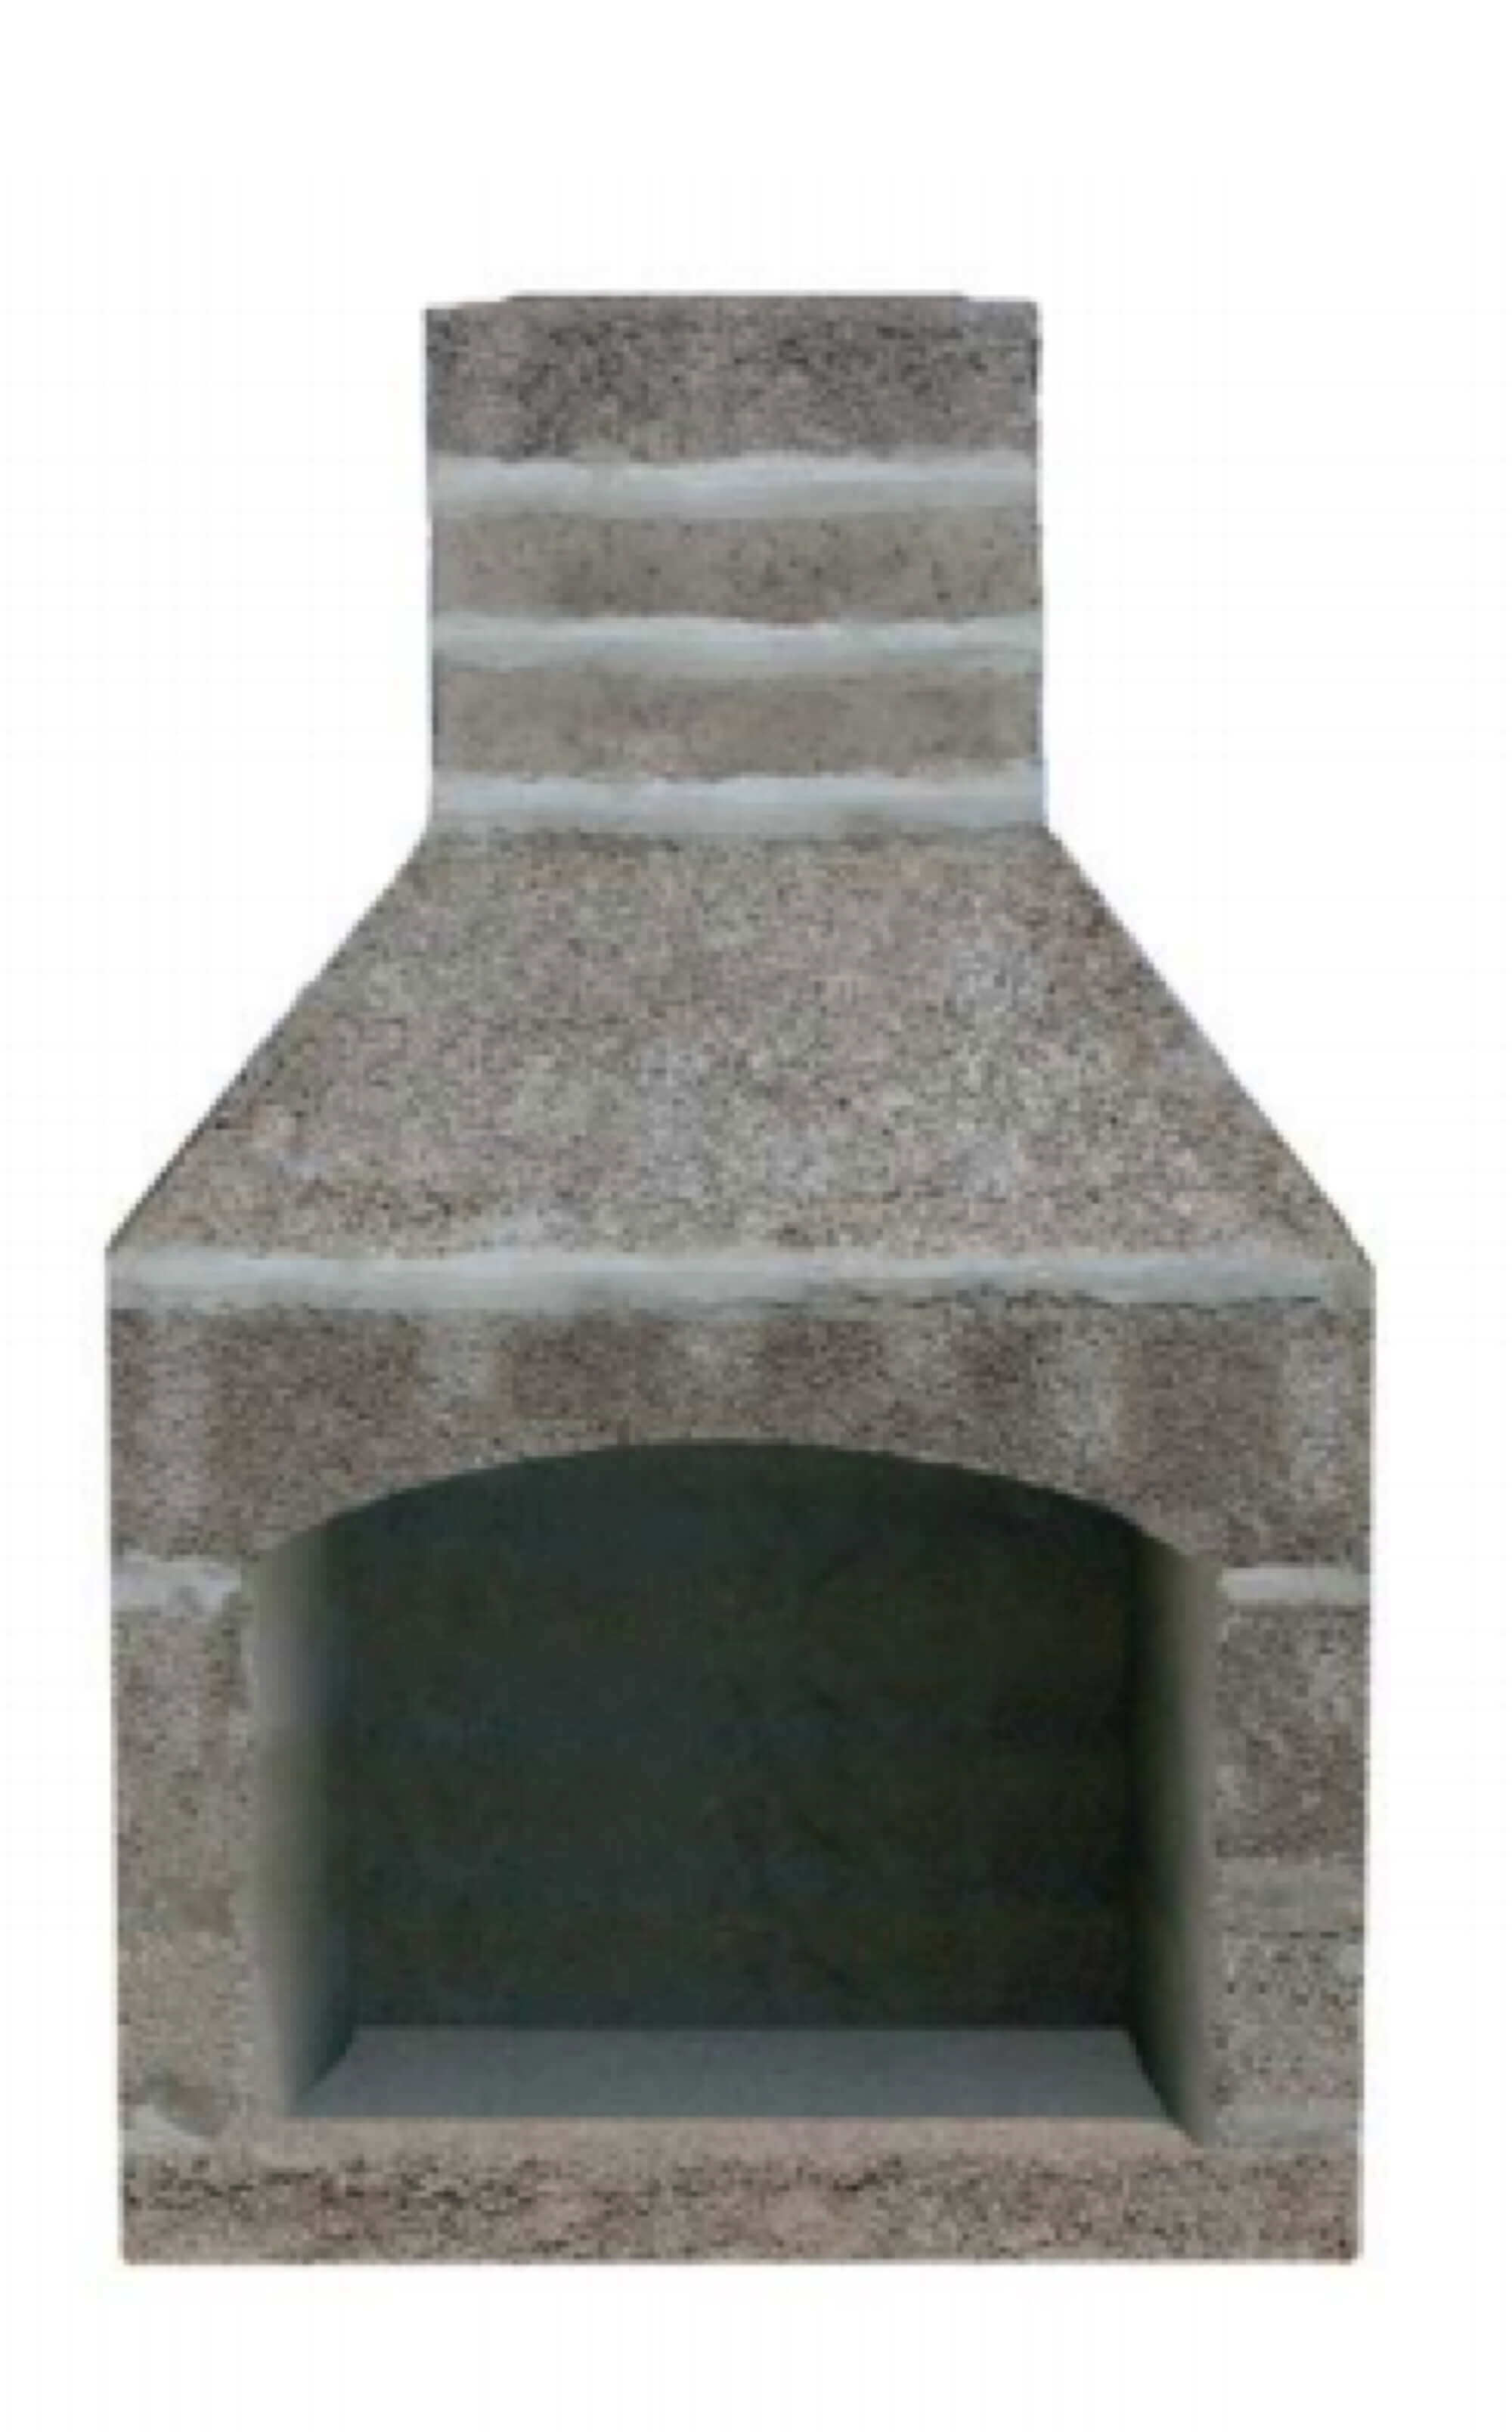 unfinished masonry fireplace, unfinished outdoor masonry fireplace, outdoor fireplace kit